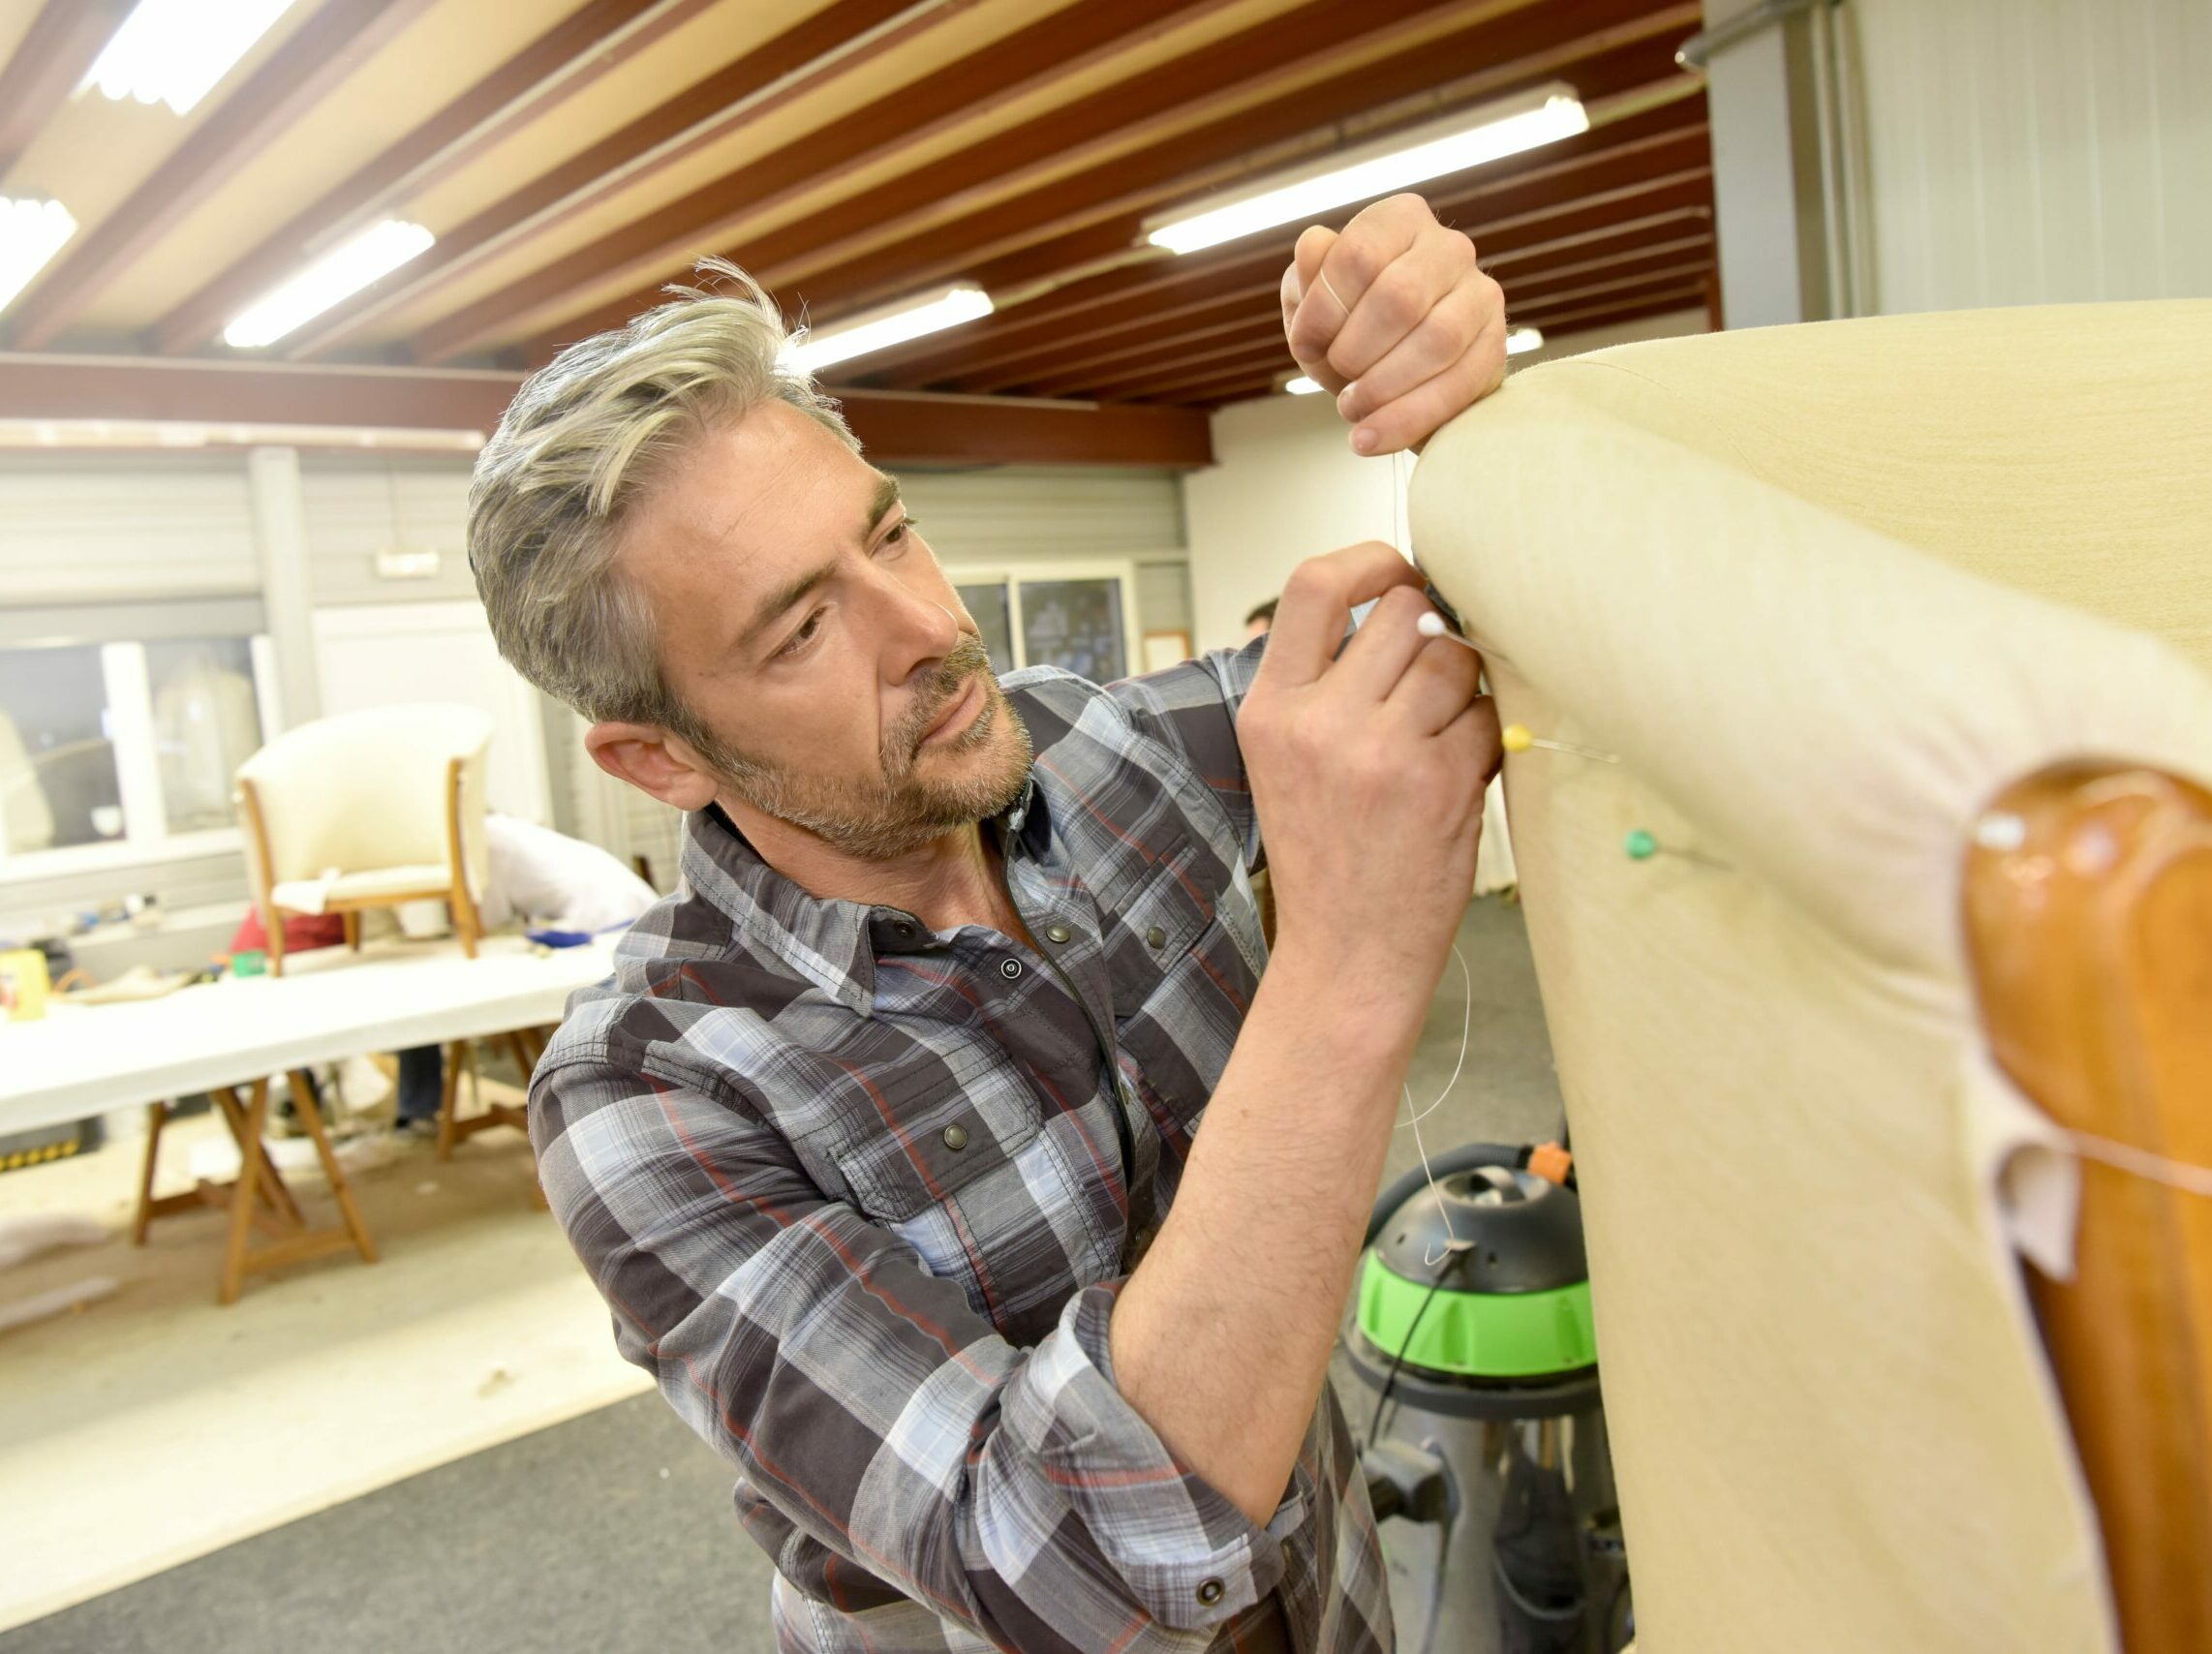 Mann im karierten Hemd polstert ein Sofa mit hellem Leder